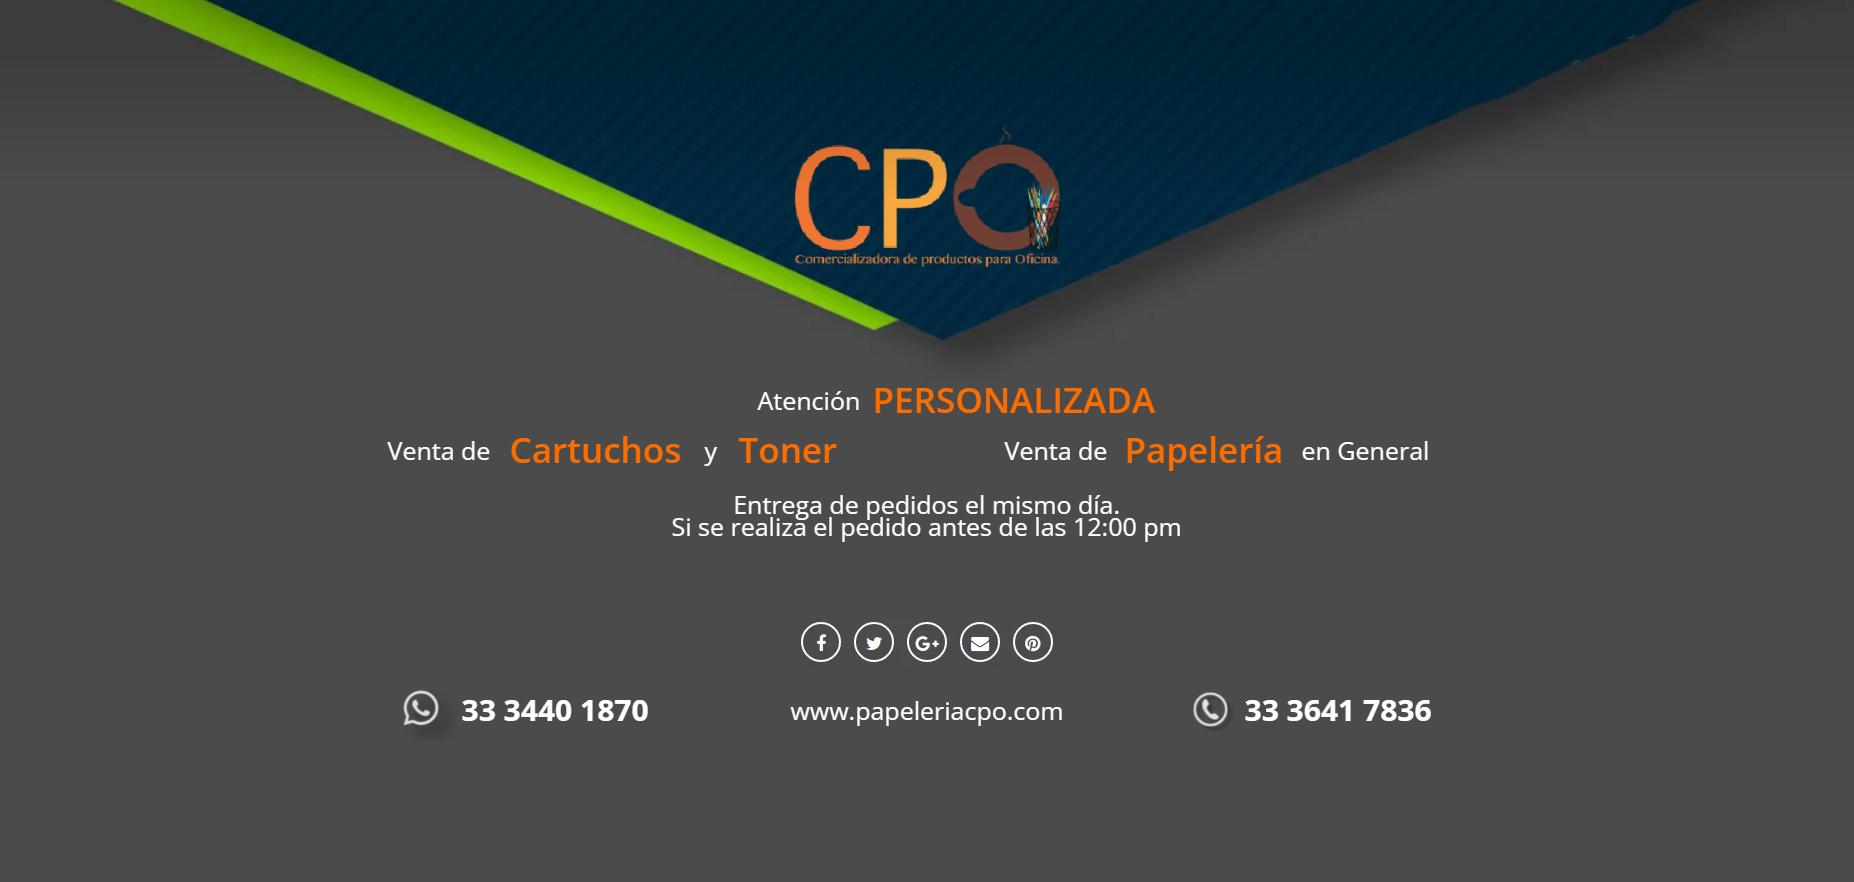 Papelería CPO  Comercializadora de productos de papelería y oficina